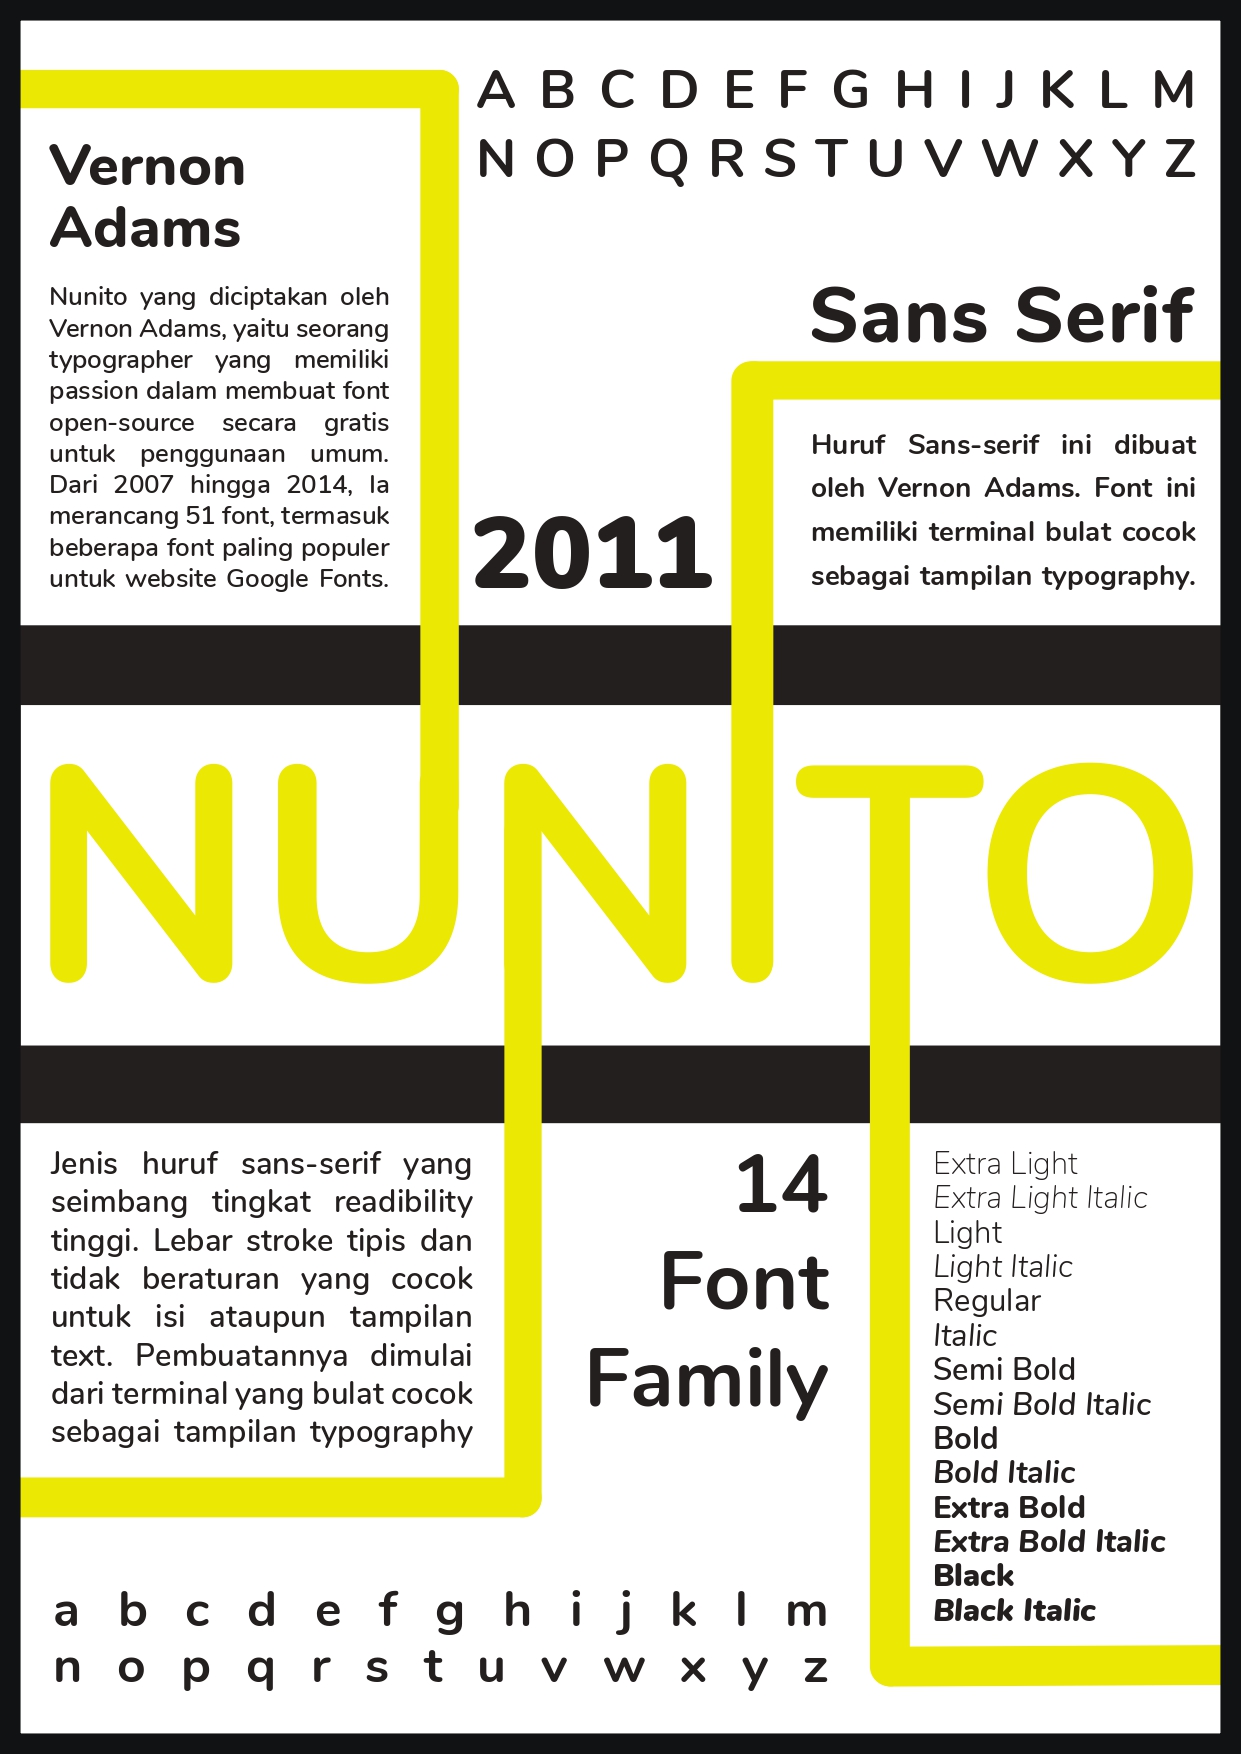 Nunito font. Nunito Sans font. Nunito. Шрифт nunito sans